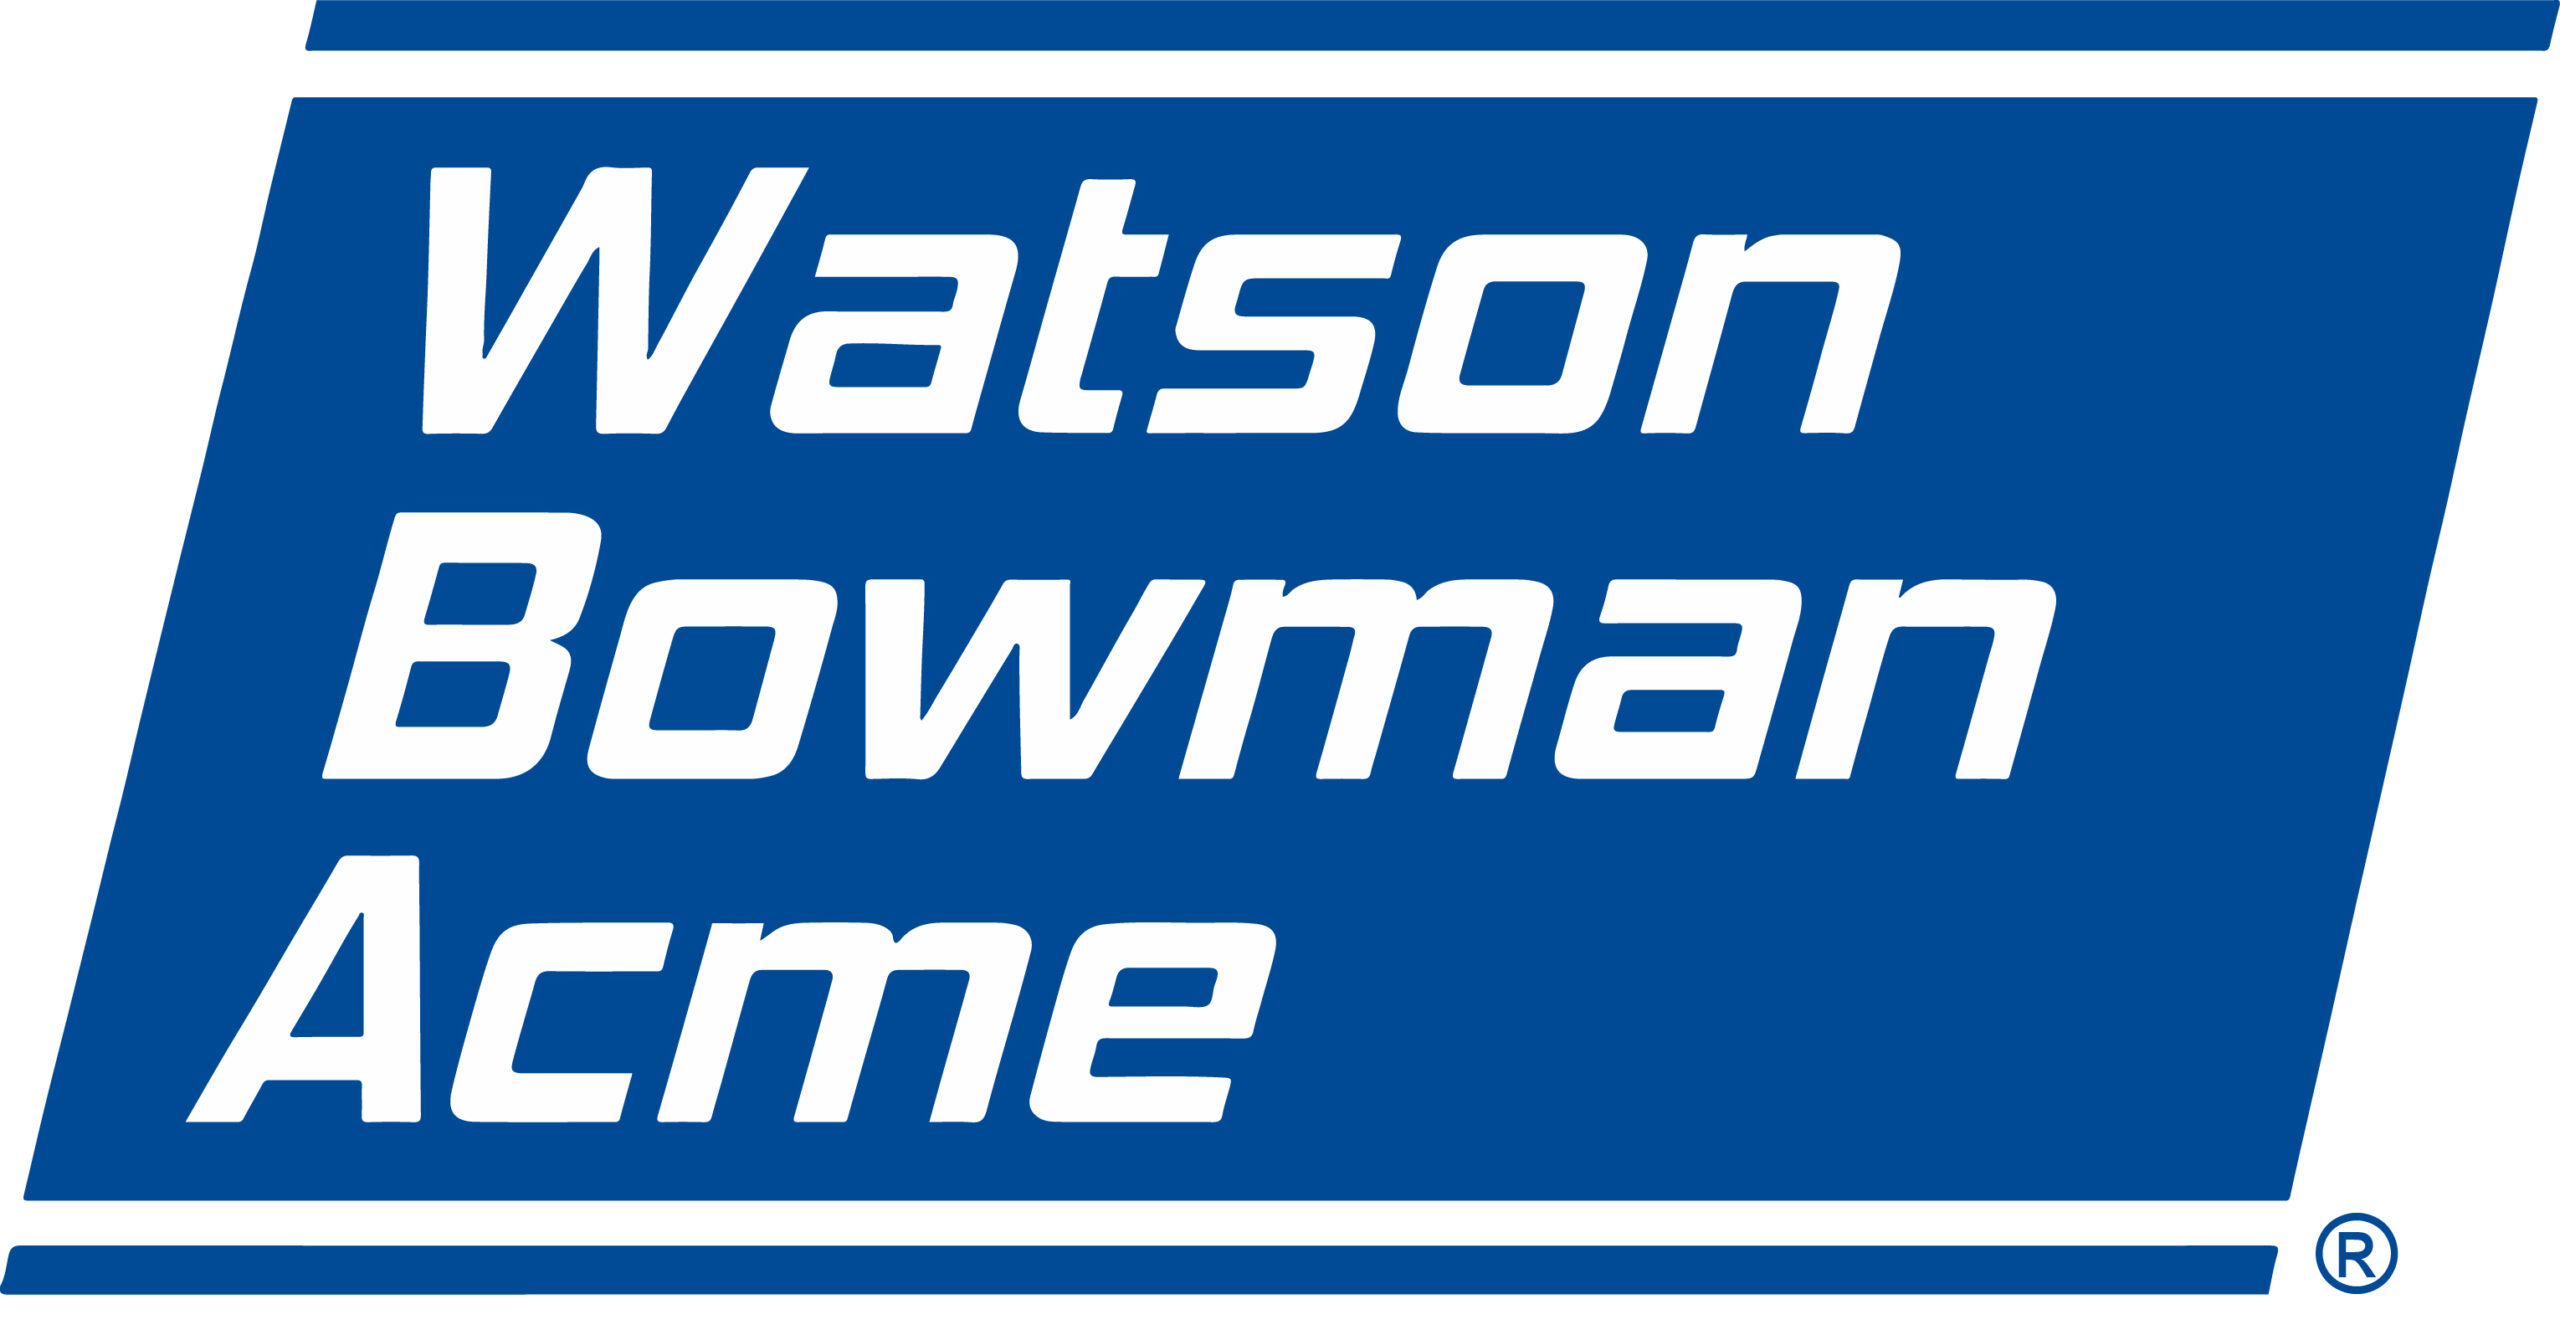 Watson Bowman Acme : 